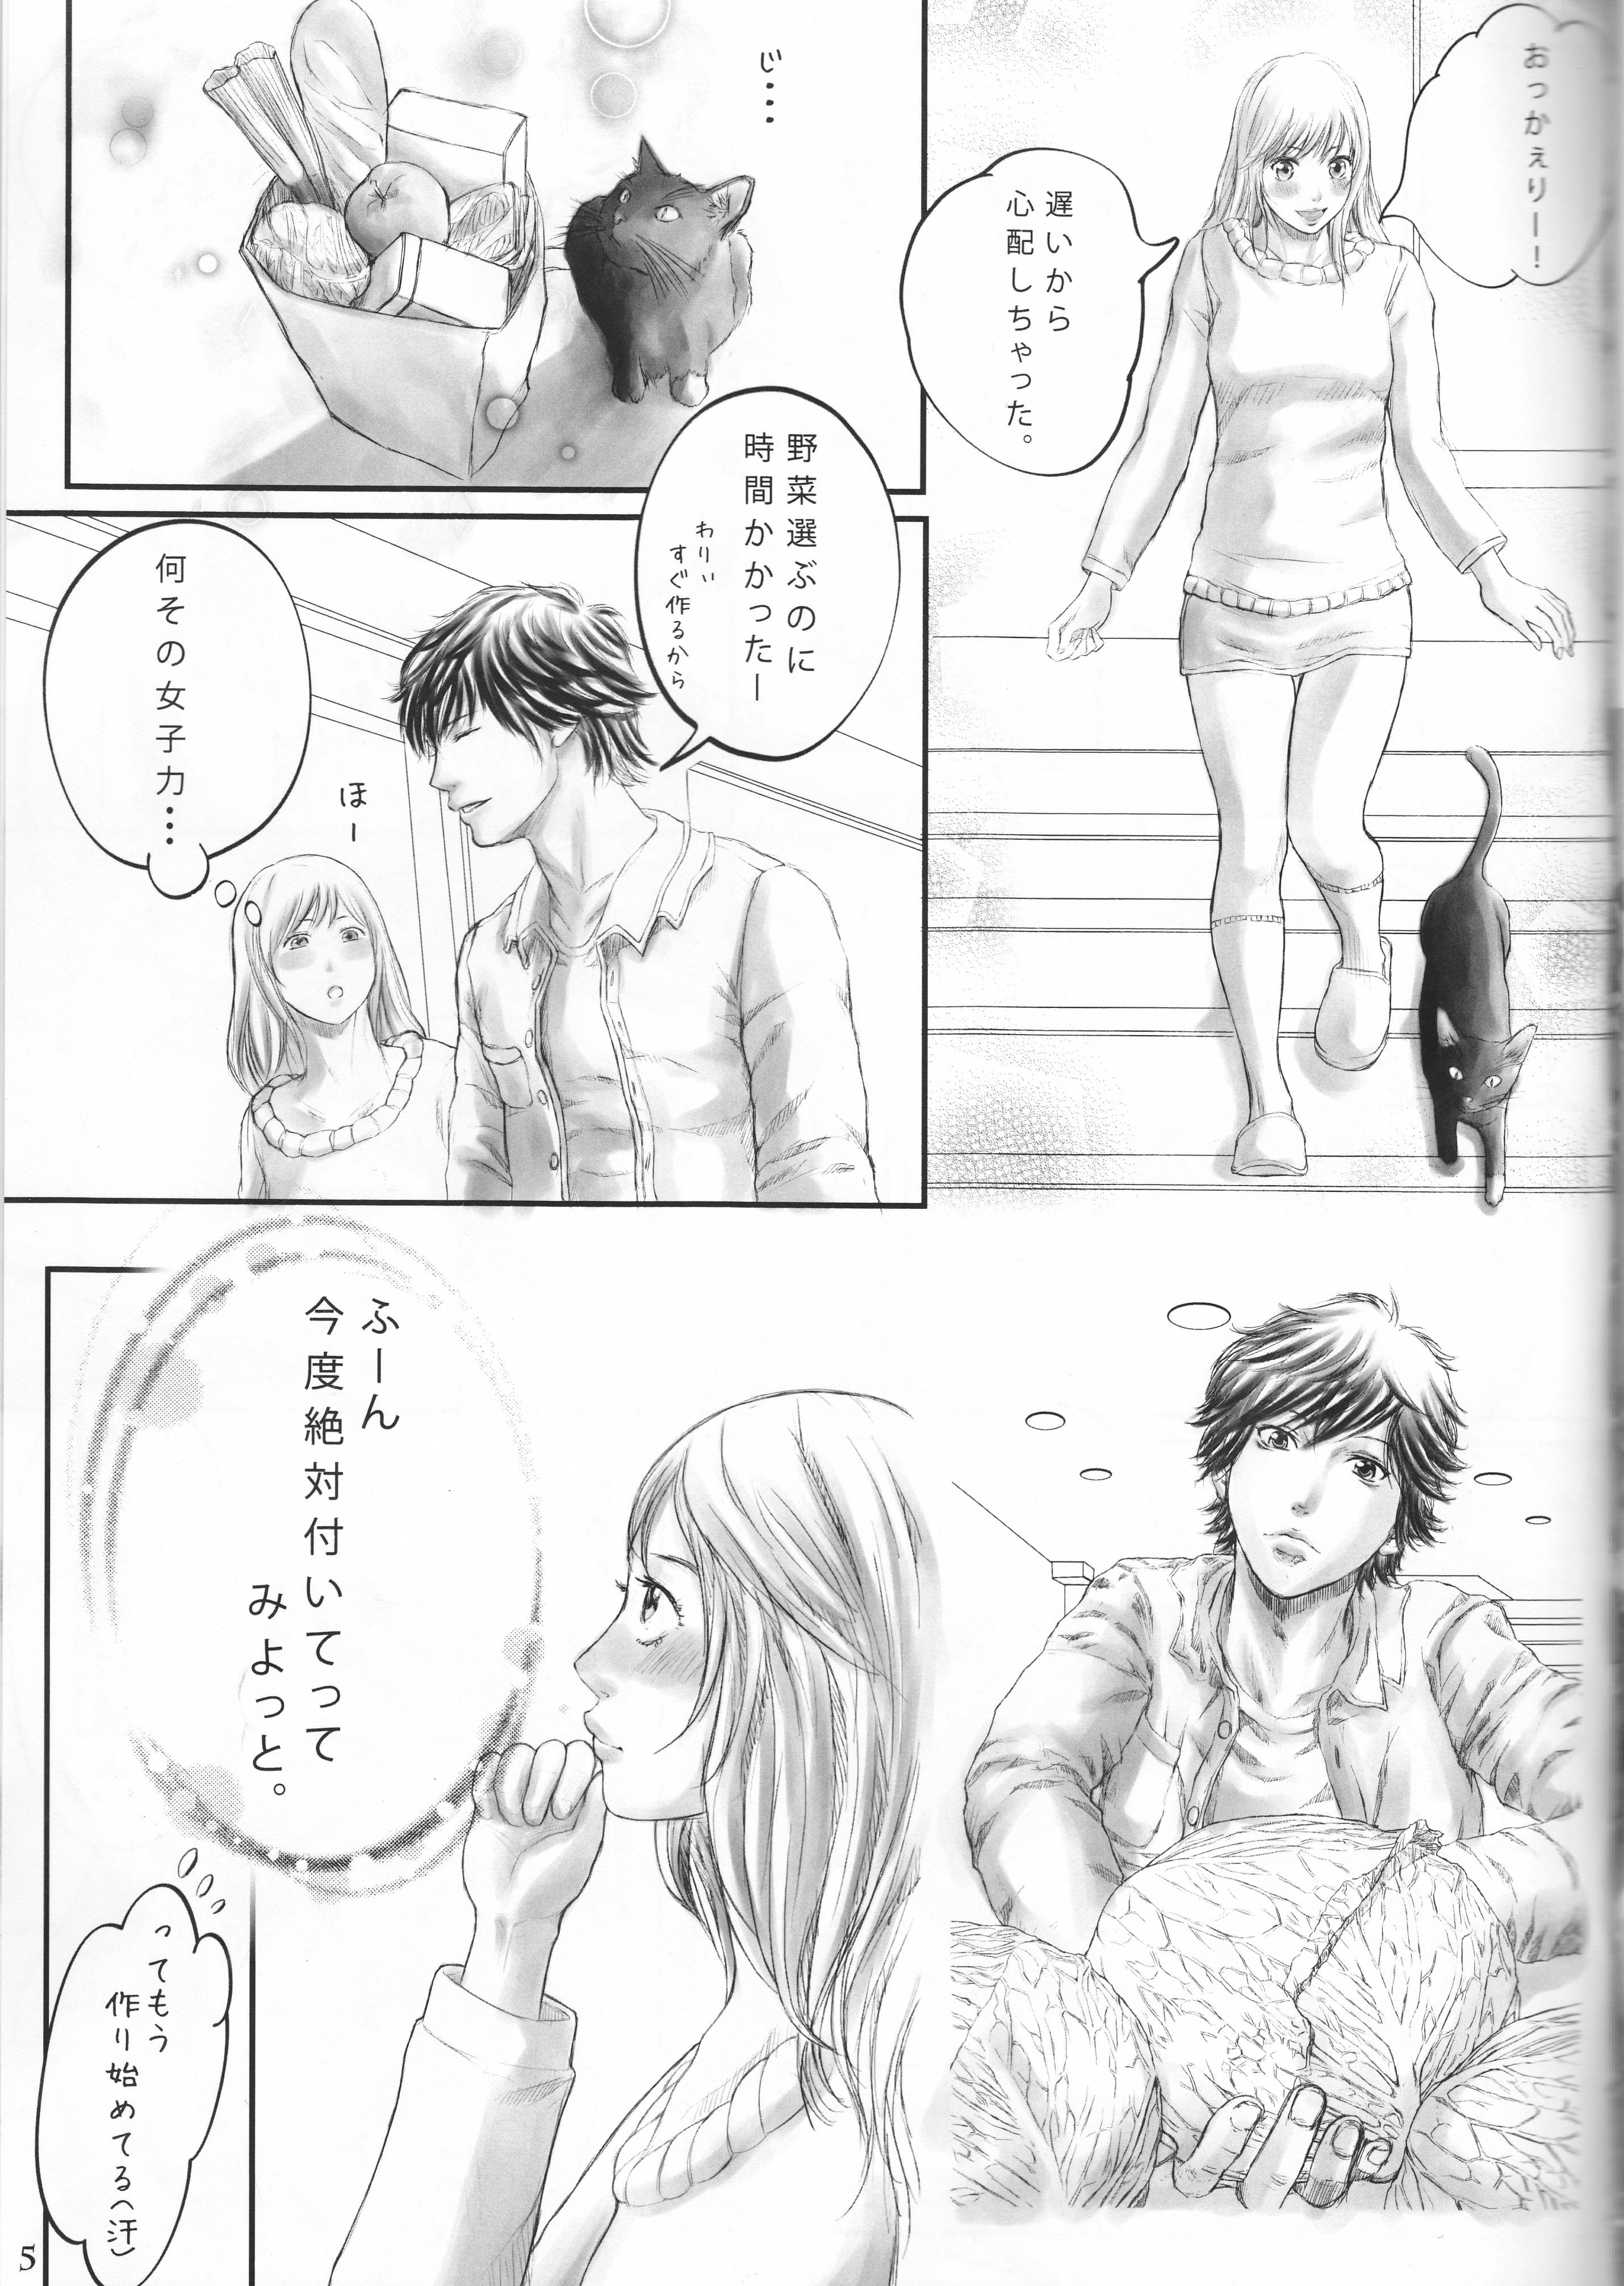 Pickup (C87) [Mekurume Yuuen (Nohara Monyoral)] AO-HARU-R (Blue Spring Ride) - Blue spring ride Massages - Page 4